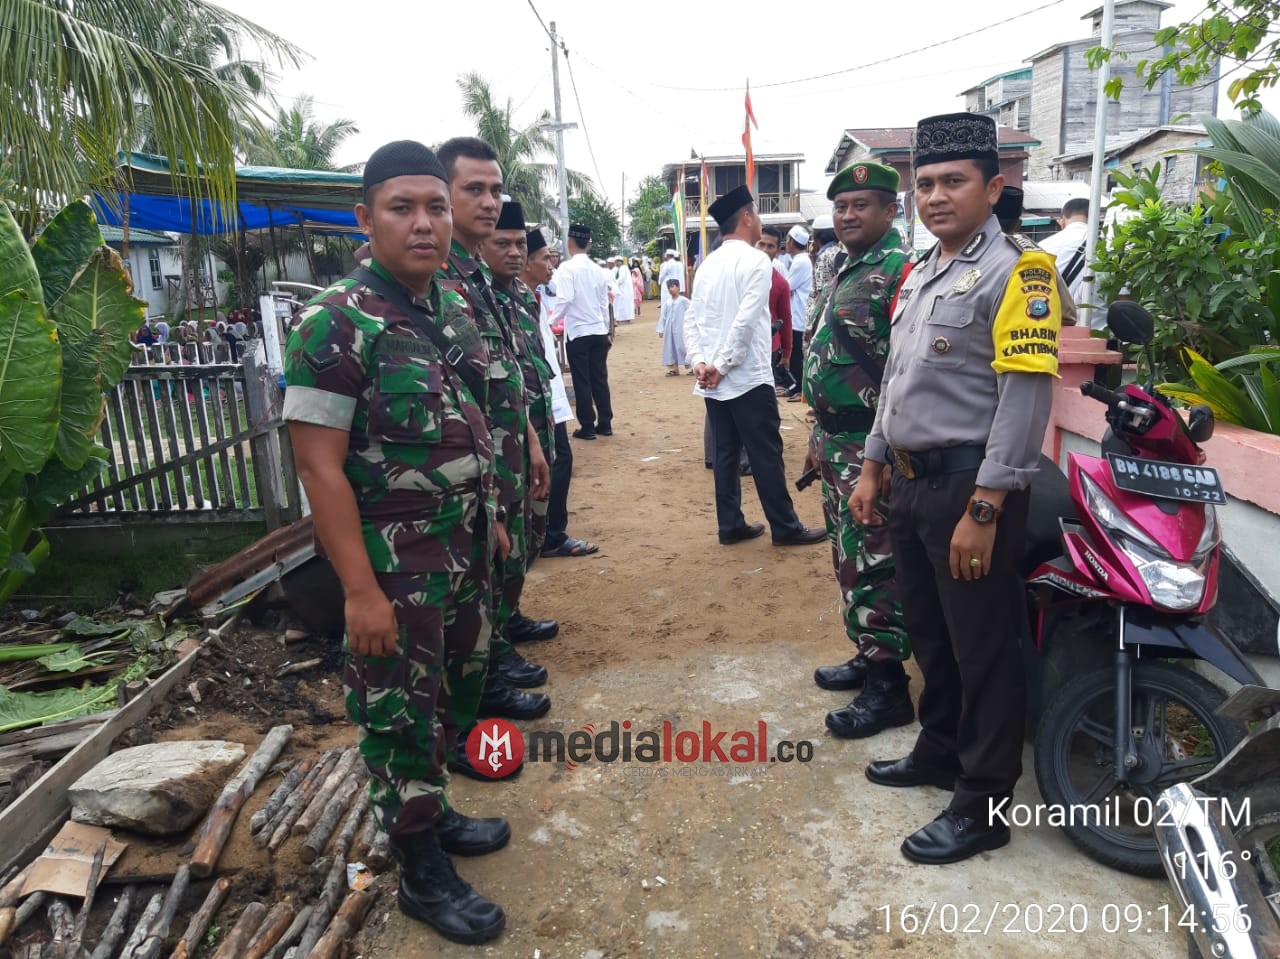 Koramil 02/Tanah Merah bersama Polri dan Pemuda Giat Pam Amankan Haul Akbar di Desa Tanjung Baru